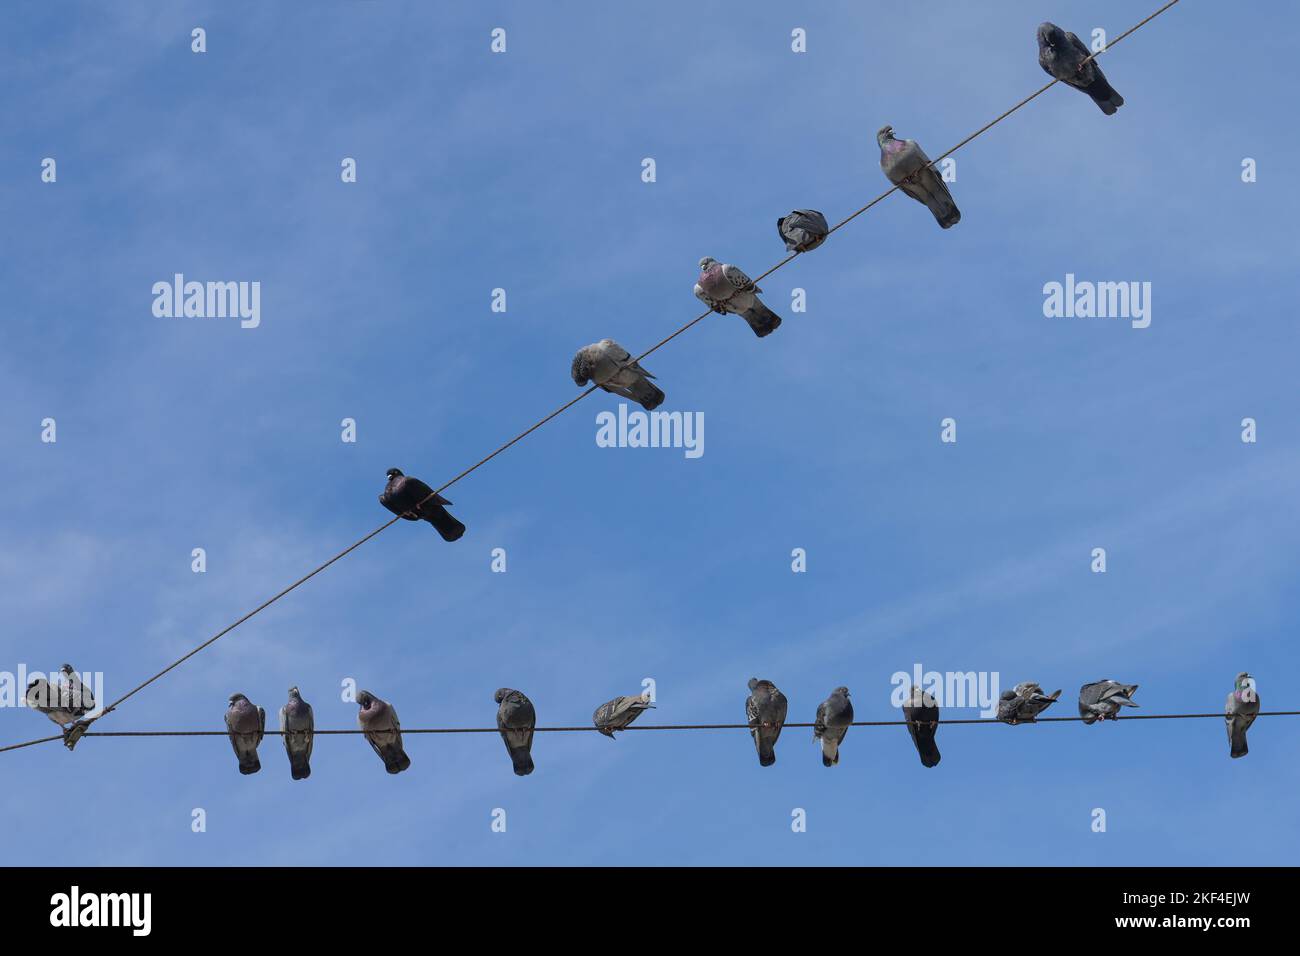 Handy verbot zeichen Schwarzweiß-Stockfotos und -bilder - Alamy